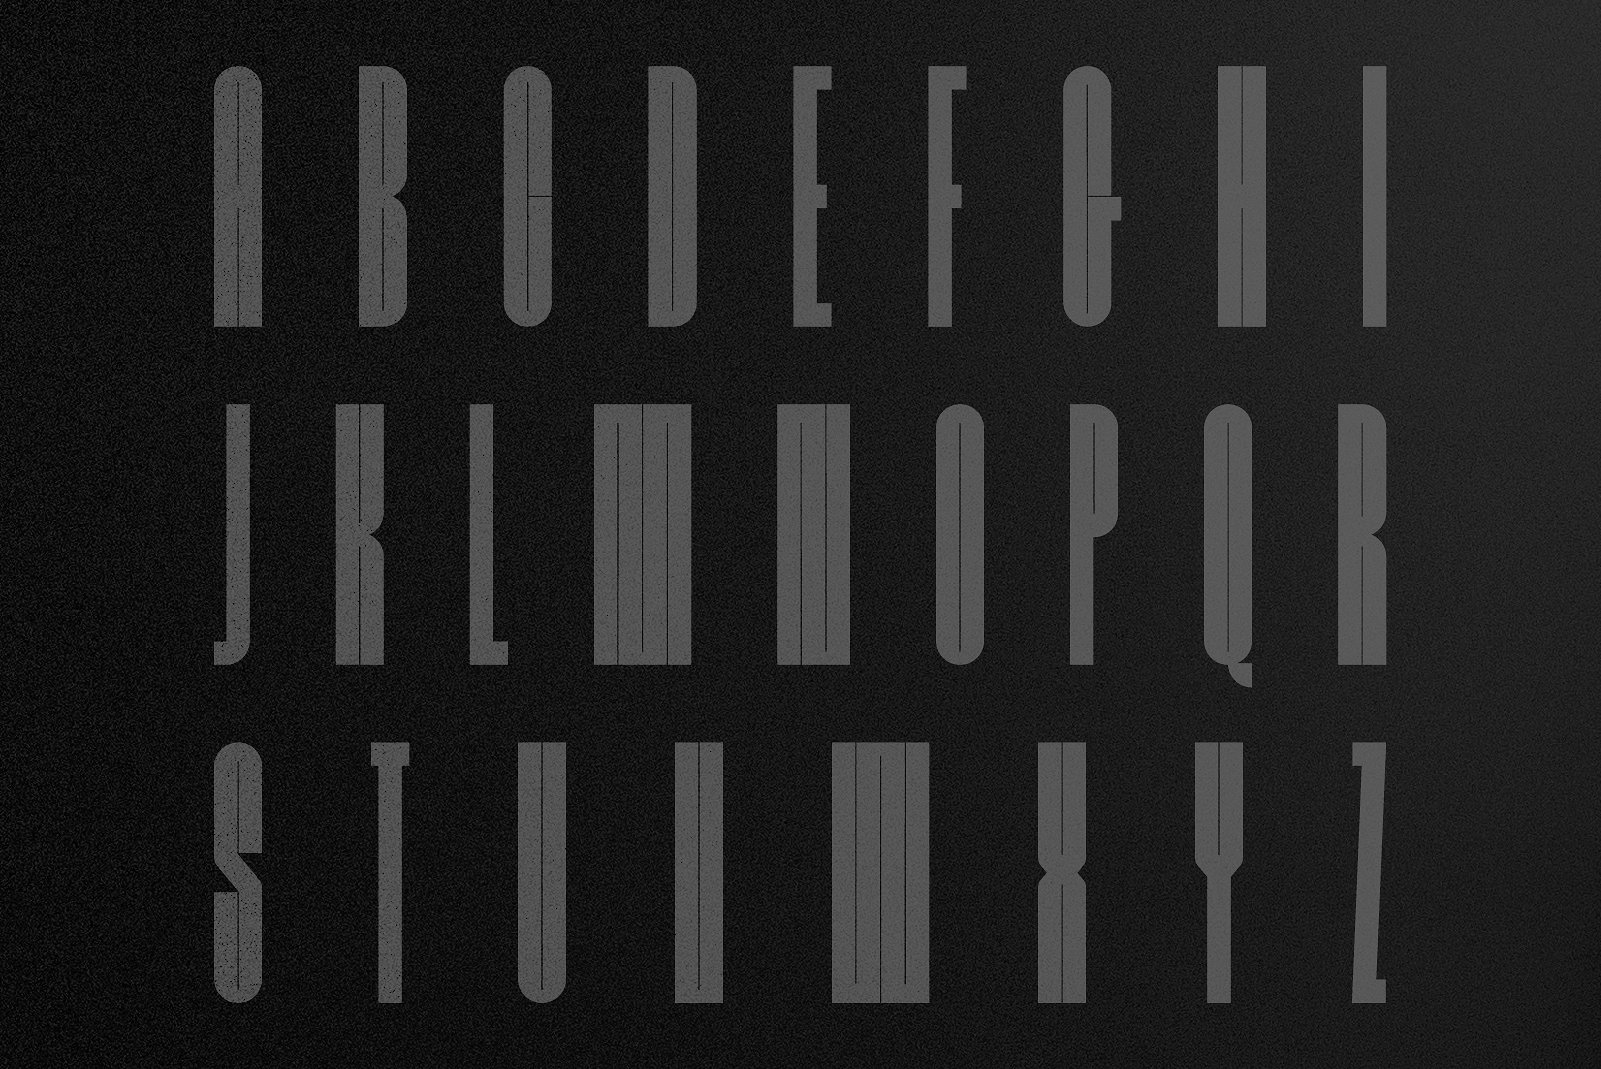 Burokku Typeface